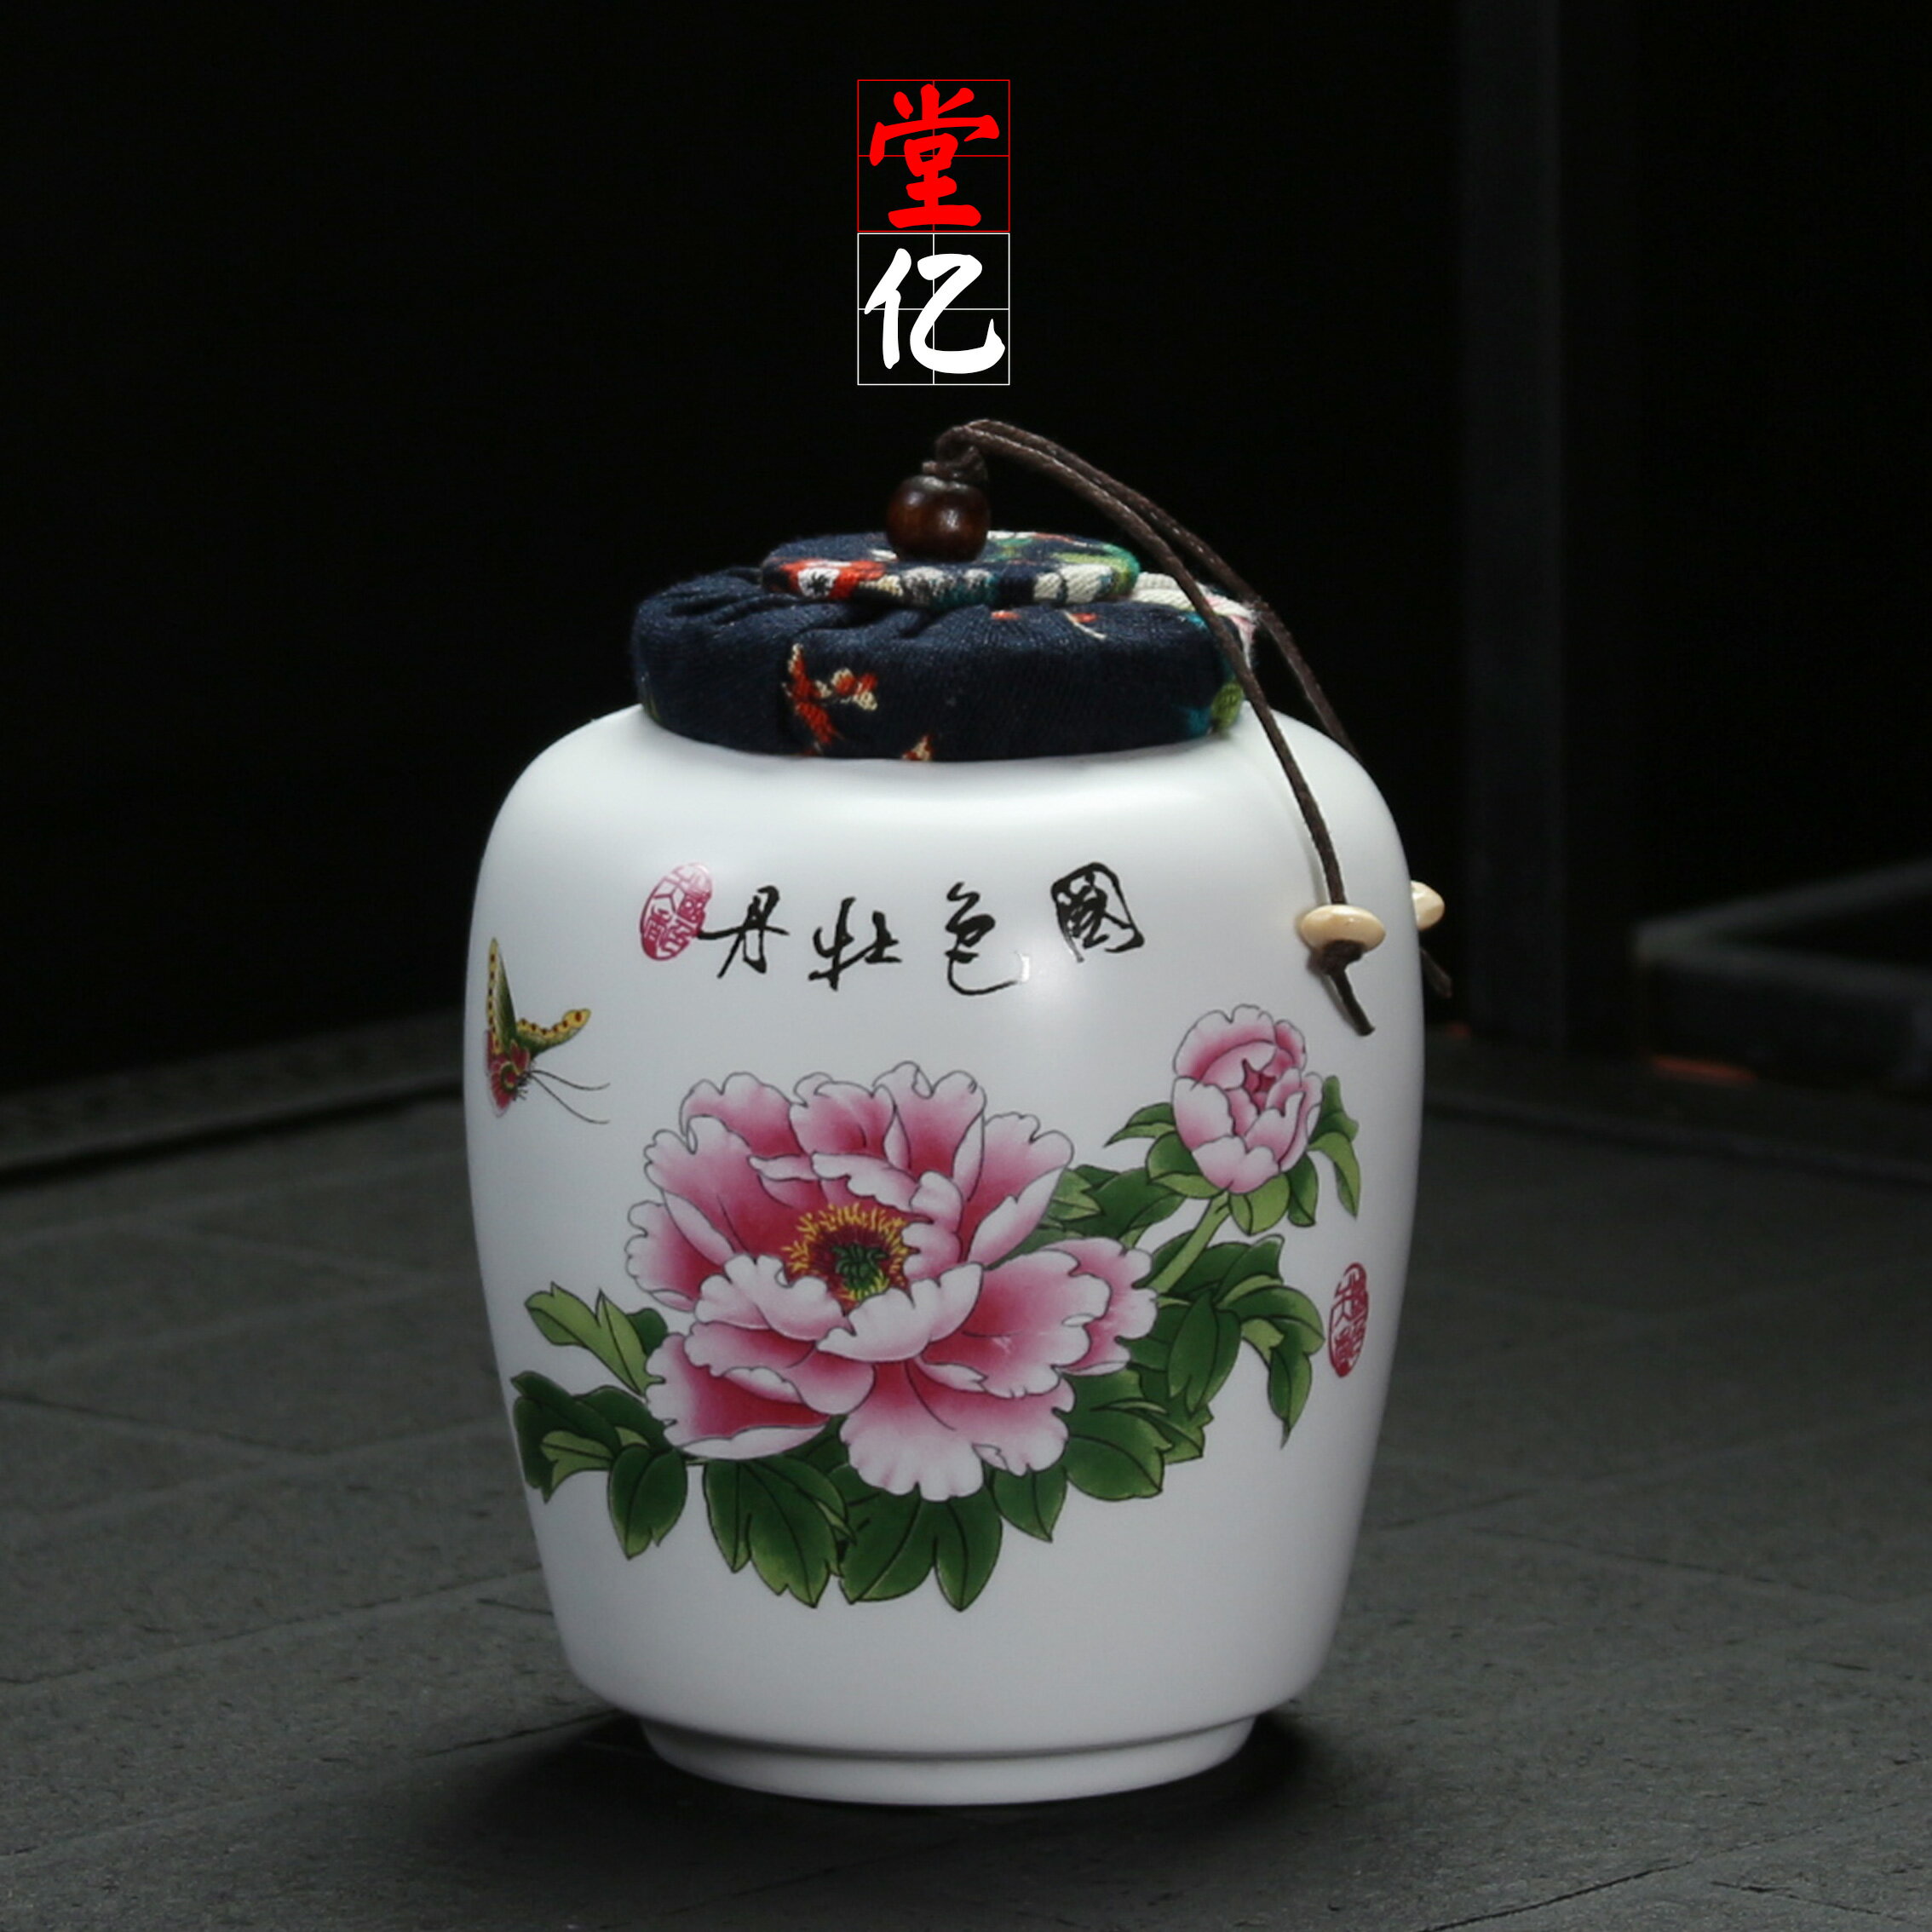 陶瓷茶葉罐創意手繪密封罐家用茶具個性茶罐功夫茶道小號儲茶倉